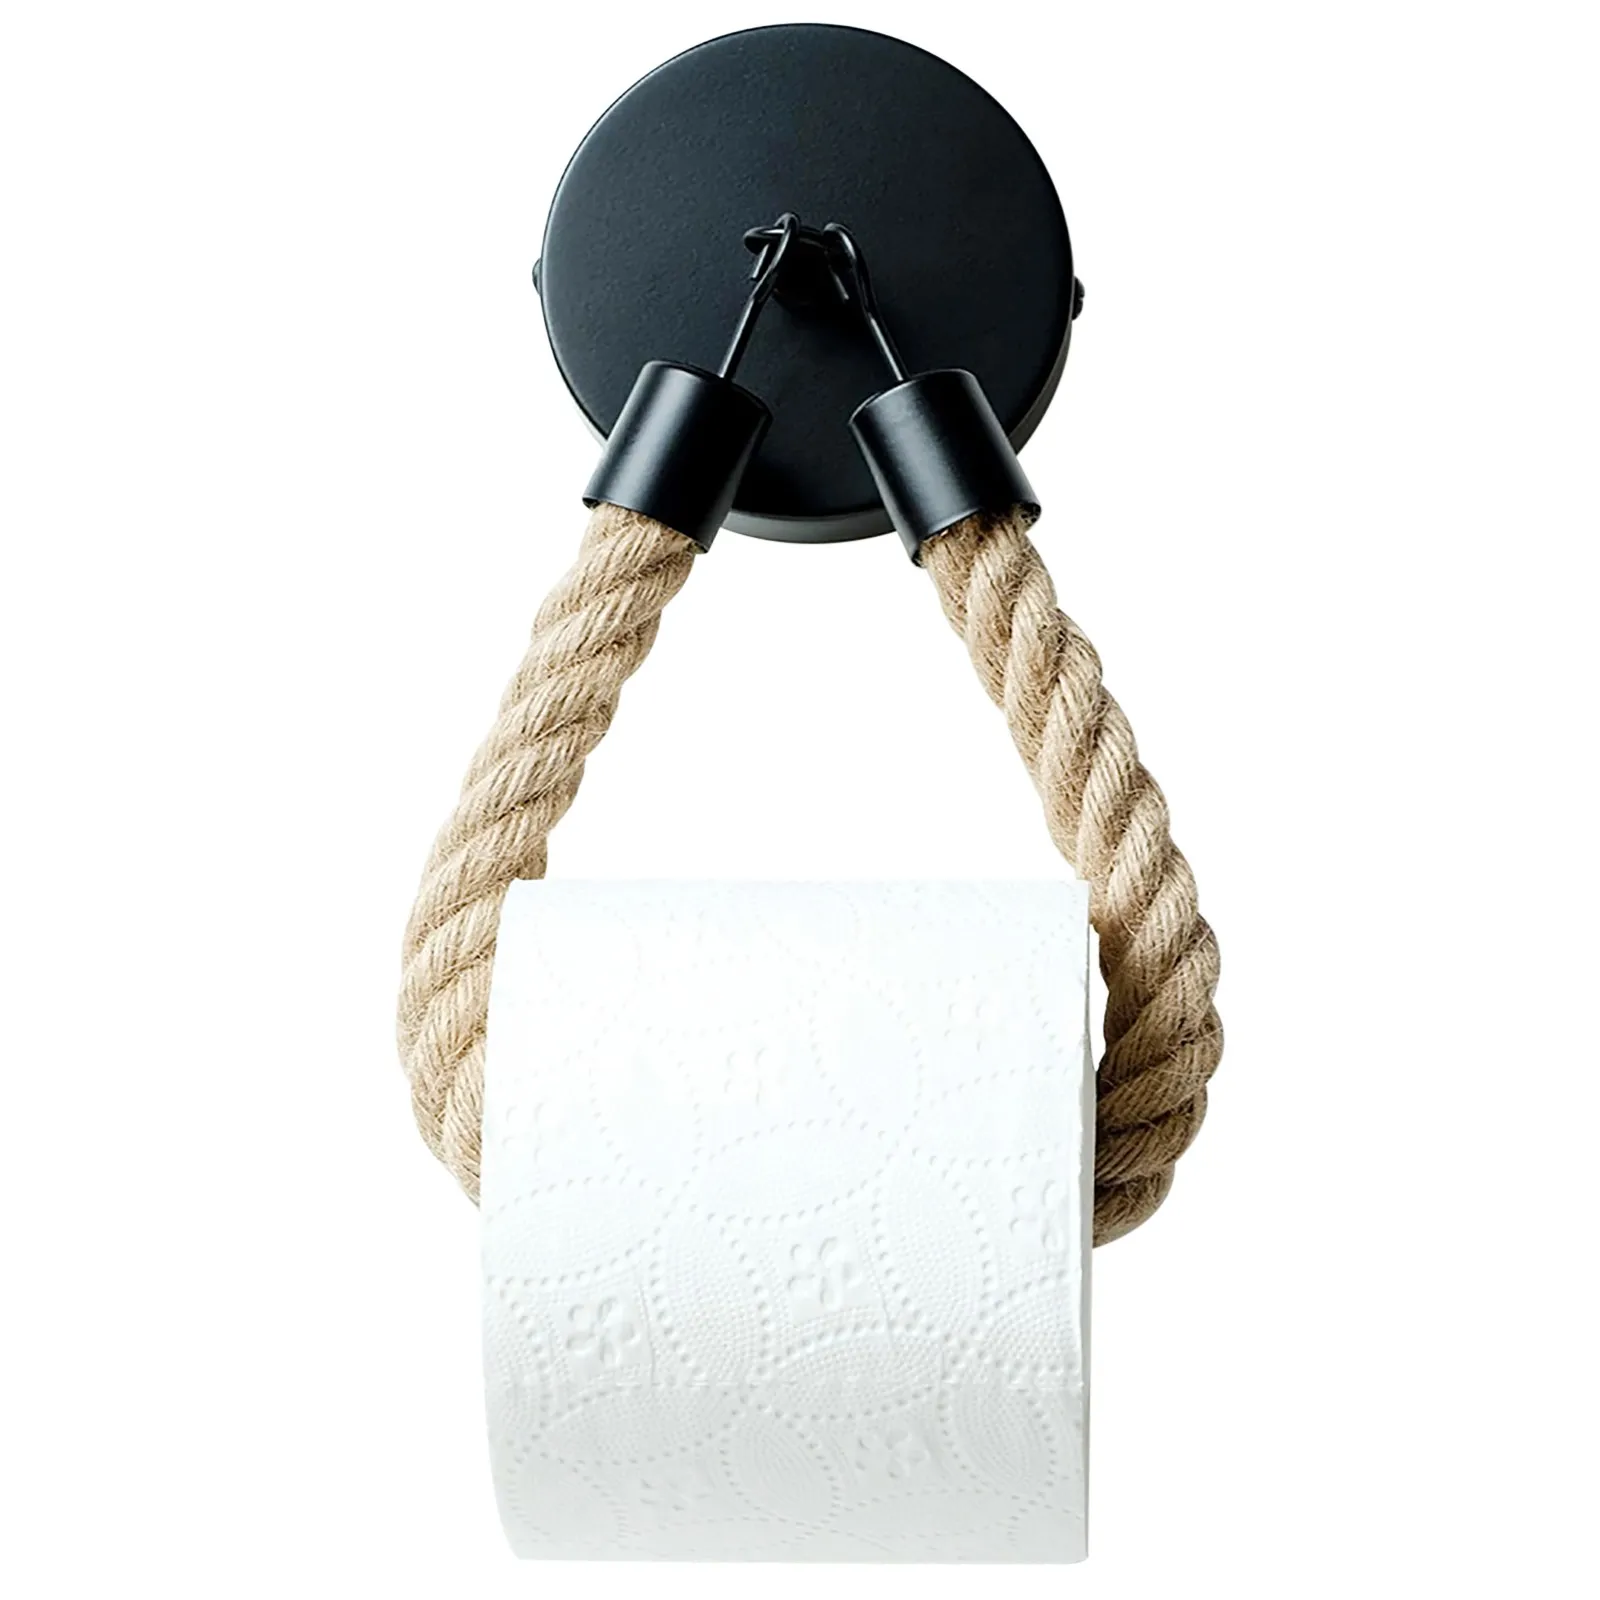 Nouveau support de rouleau de papier toilette sans perçage, porte